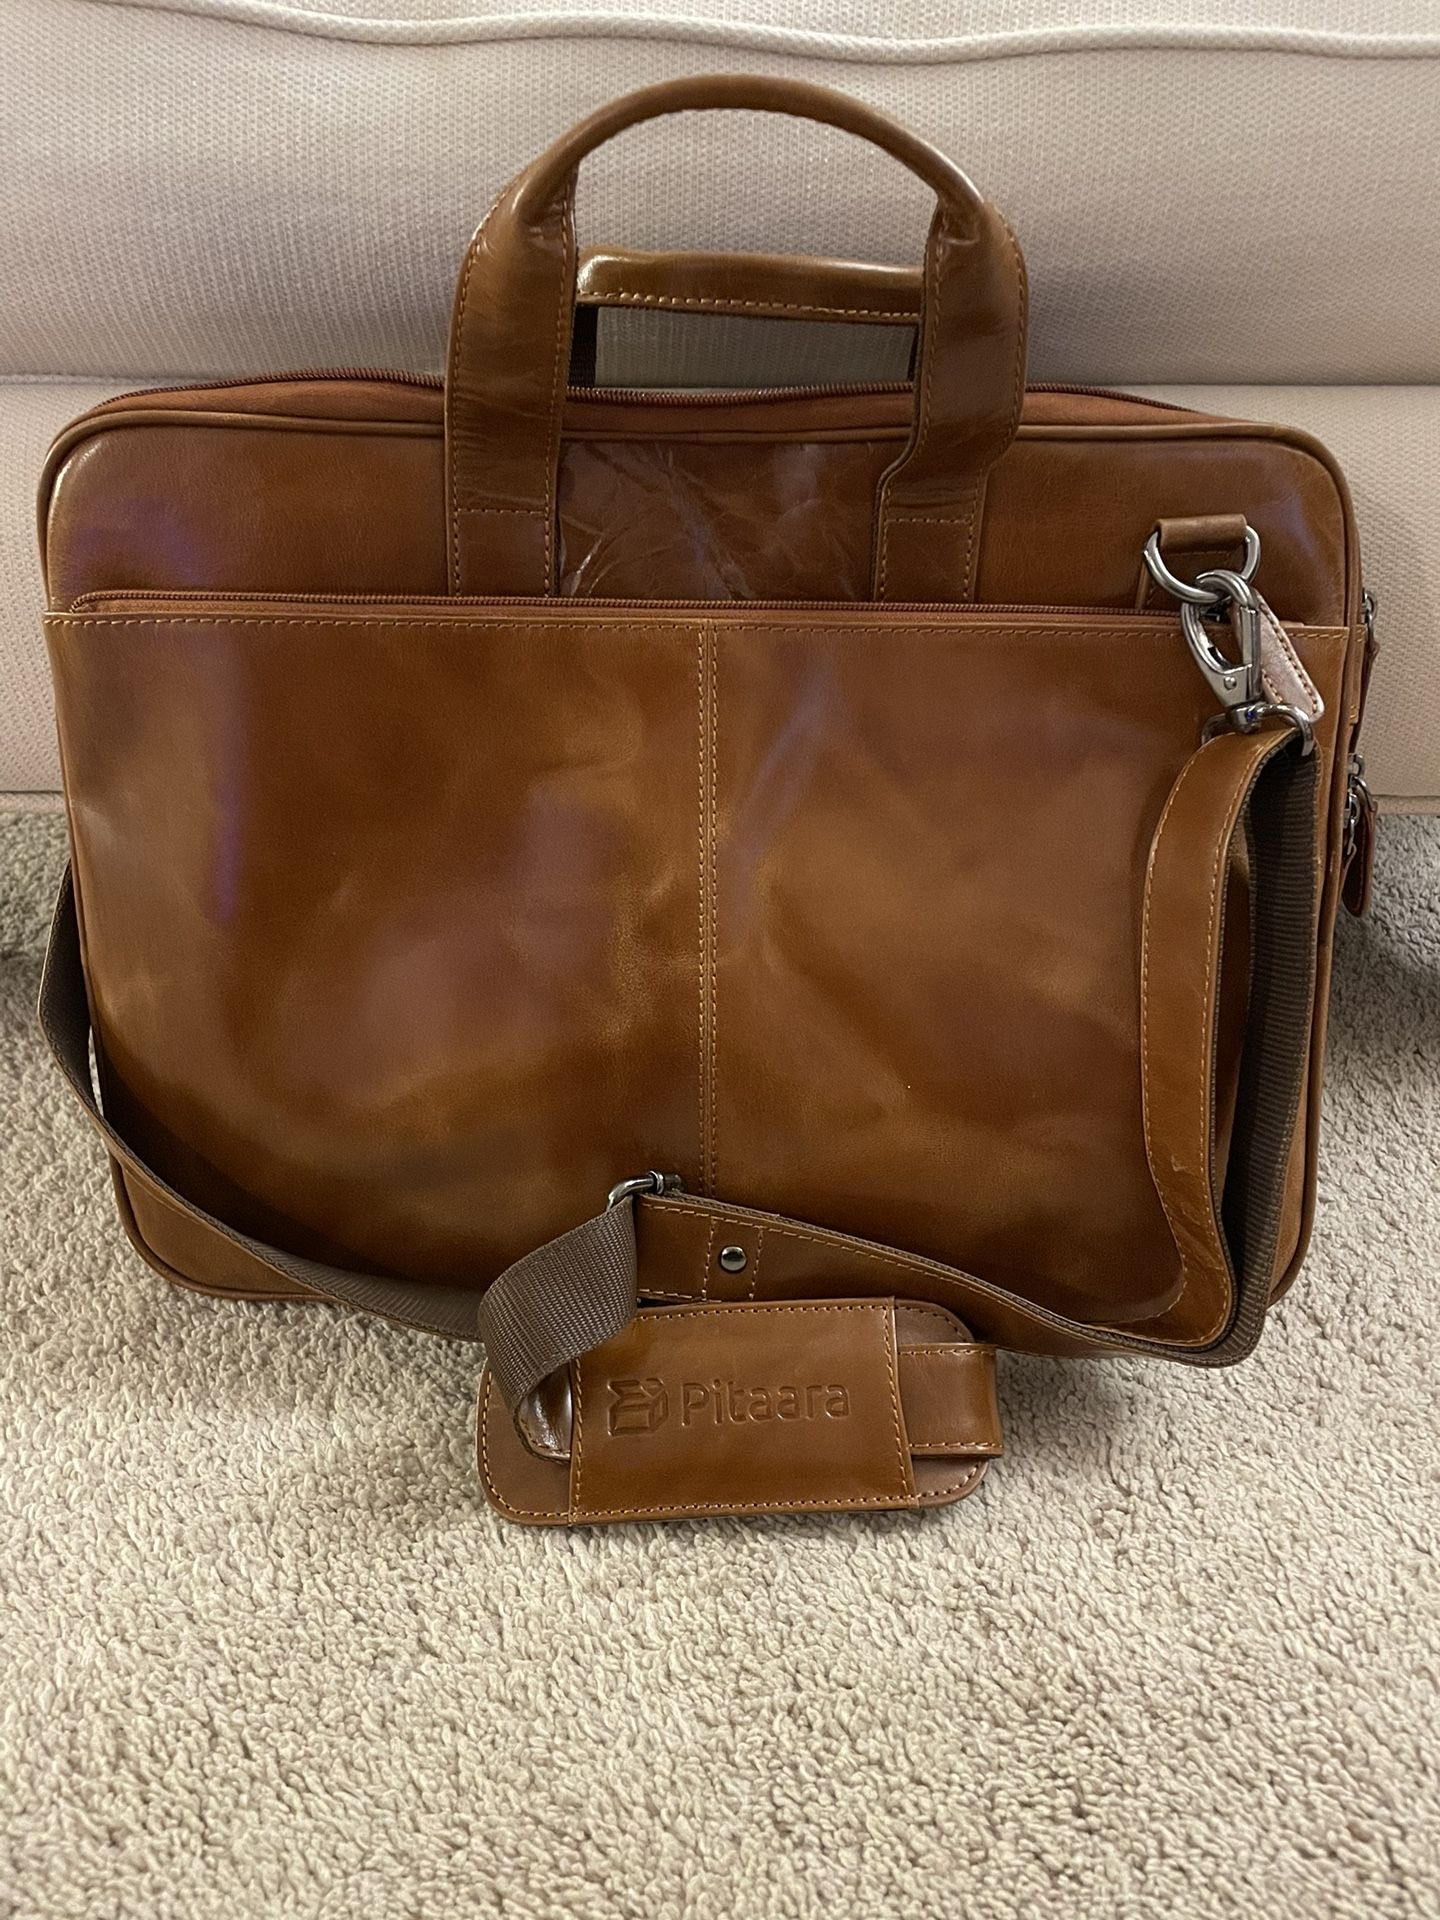 Pitaara Leather Messenger Bag